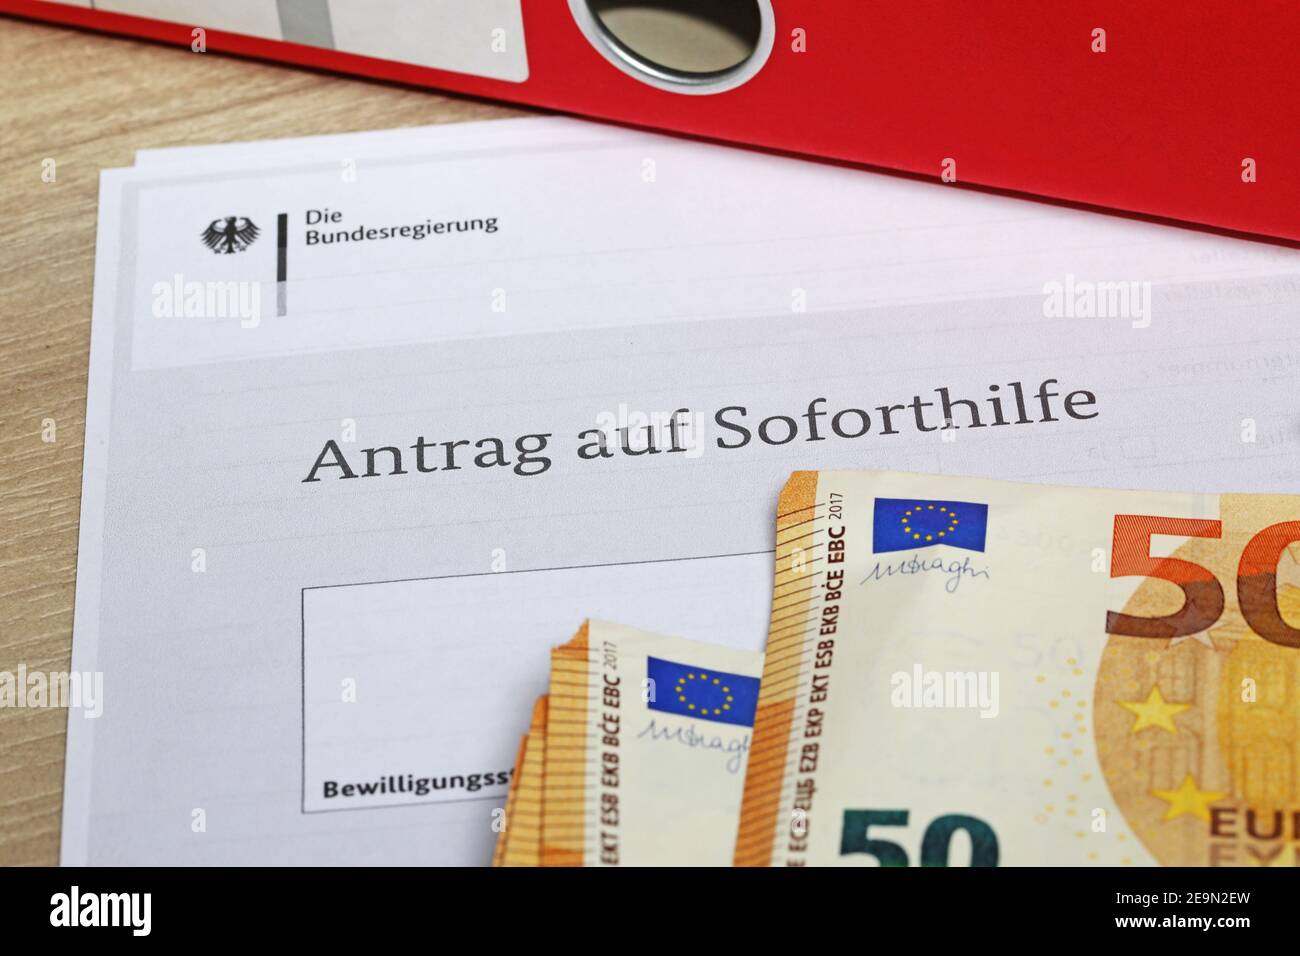 Image de symbole aide immédiate Corona en Allemagne (Sodirect-Zuschuss Corona) Banque D'Images